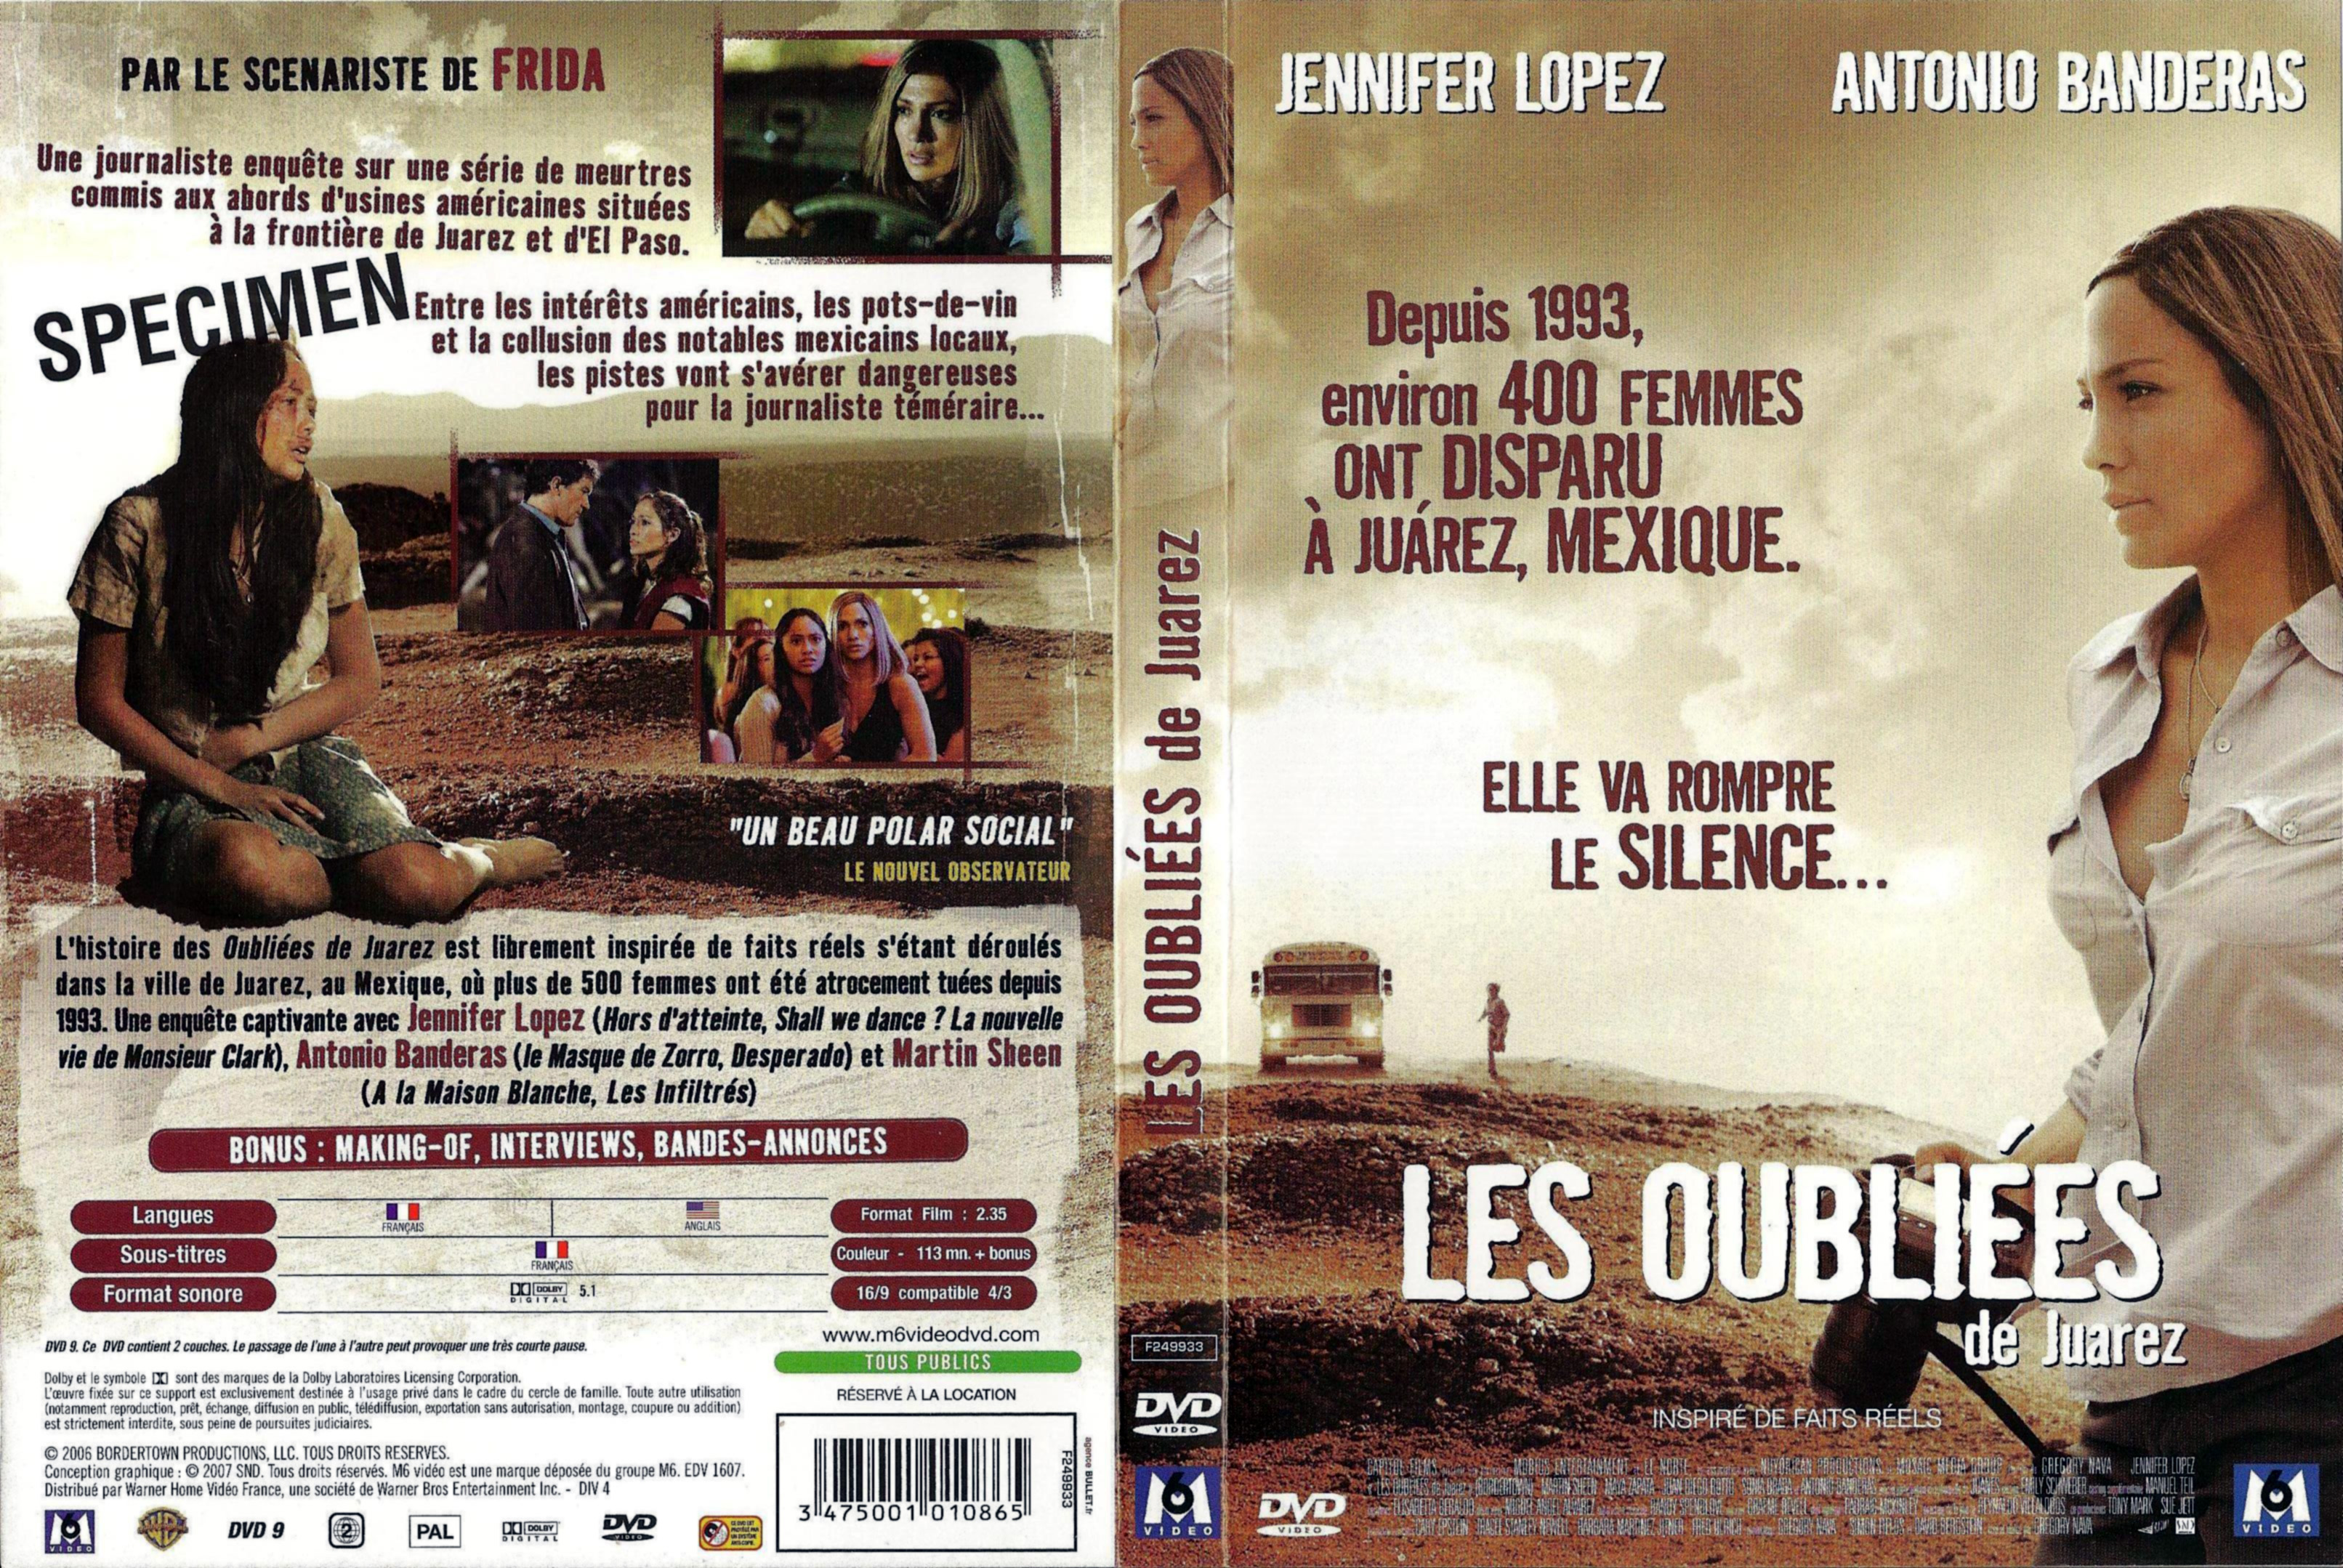 Jaquette DVD Les oublies de Juarez v2